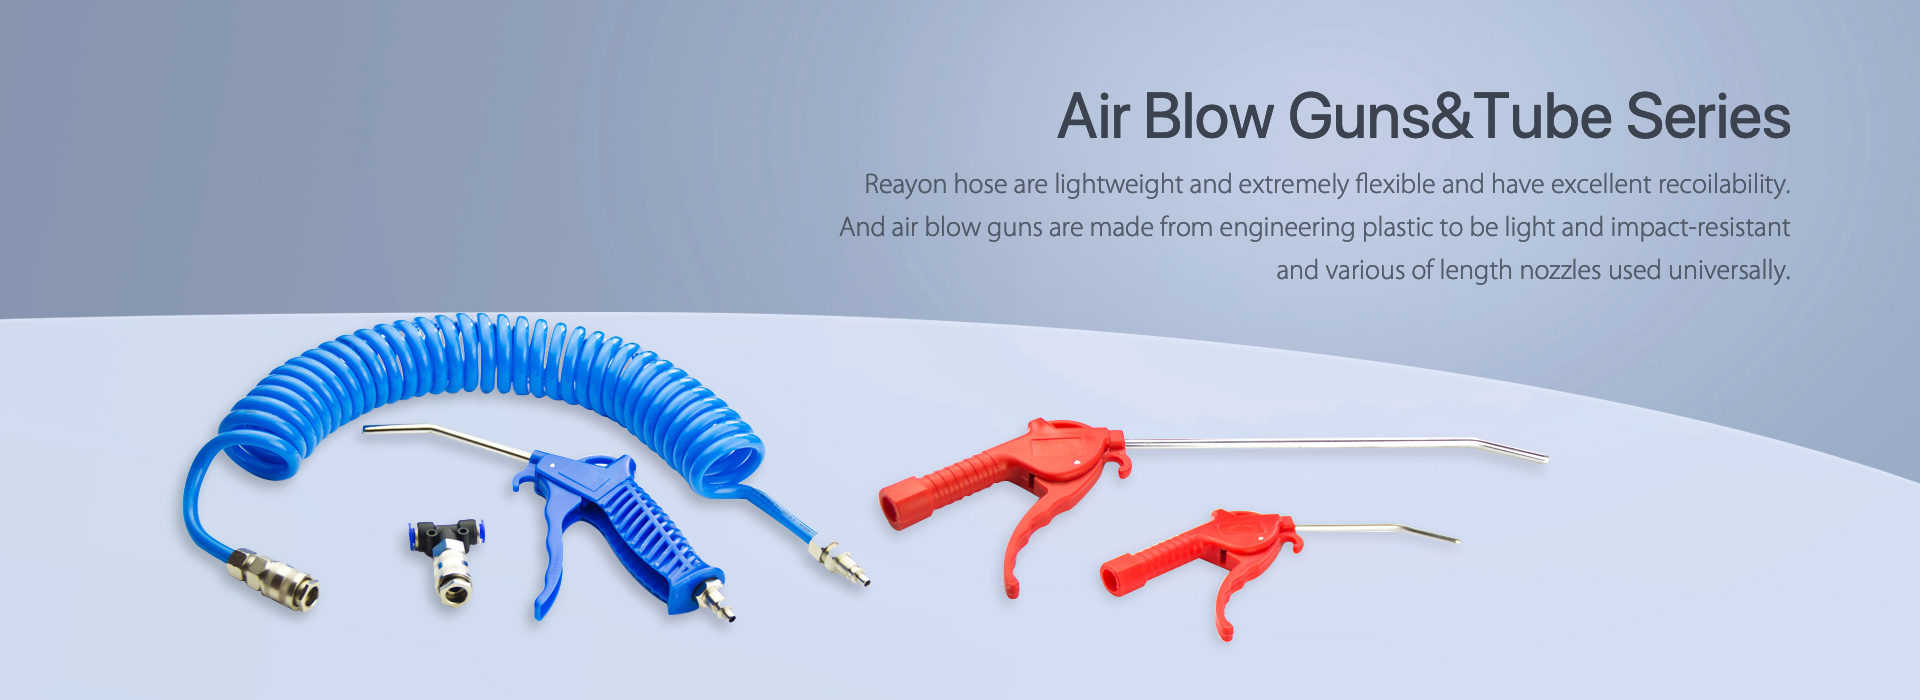 Air-Blow-GunsTube-seeria